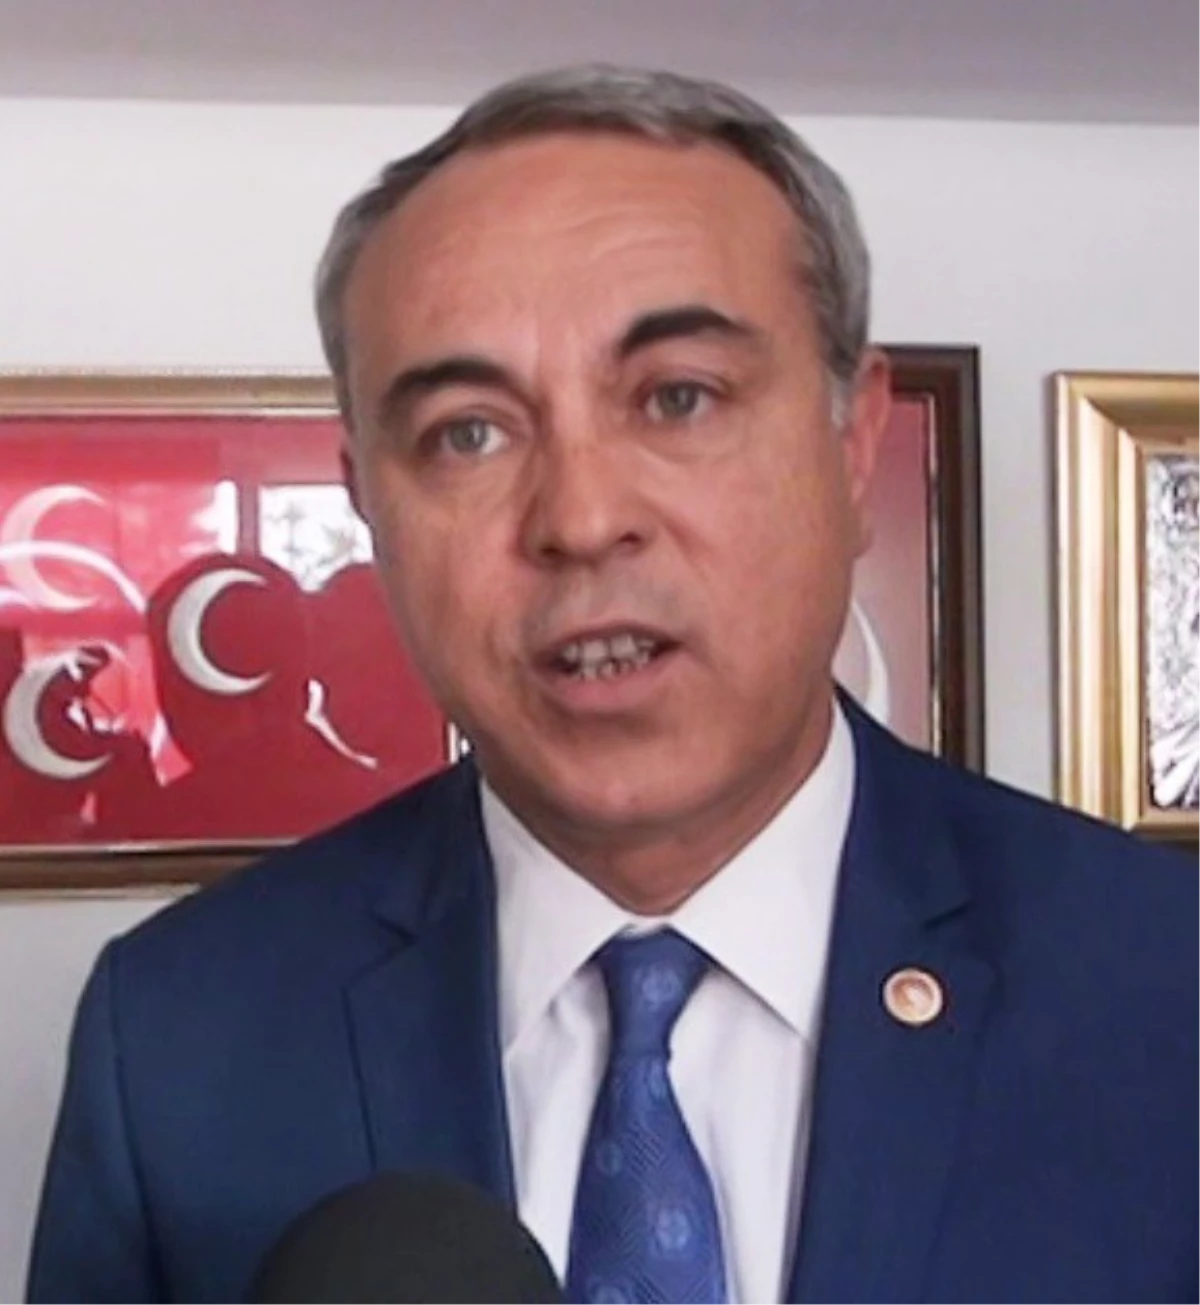 MHP Kahramanmaraş Milletvekili Dedeoğlu: "Konu Vatan Olunca Gerisi Teferruat"